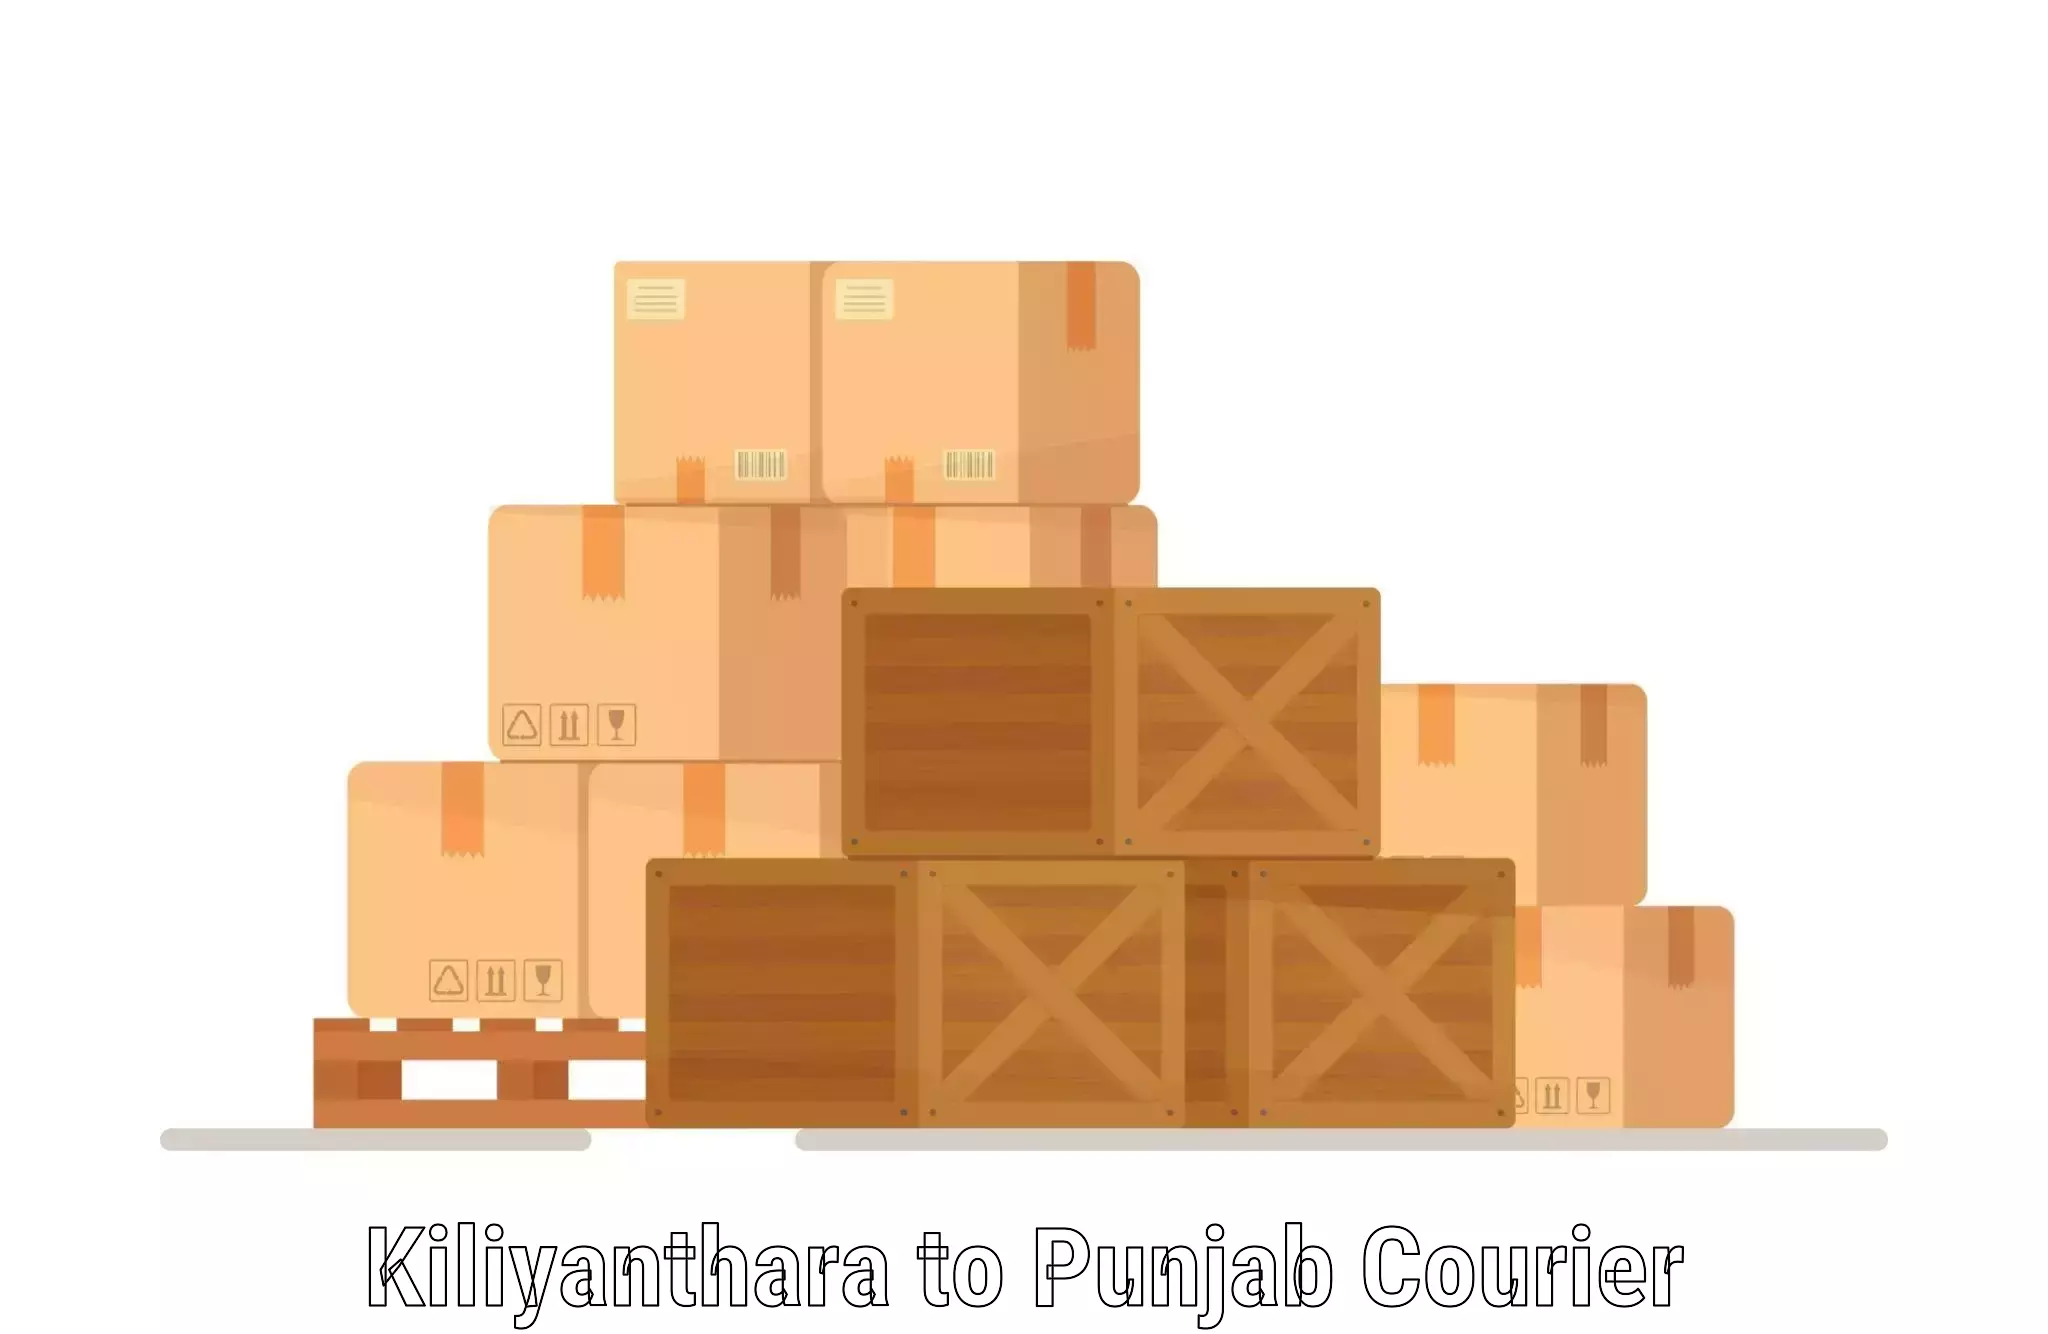 Logistics and distribution Kiliyanthara to Punjab